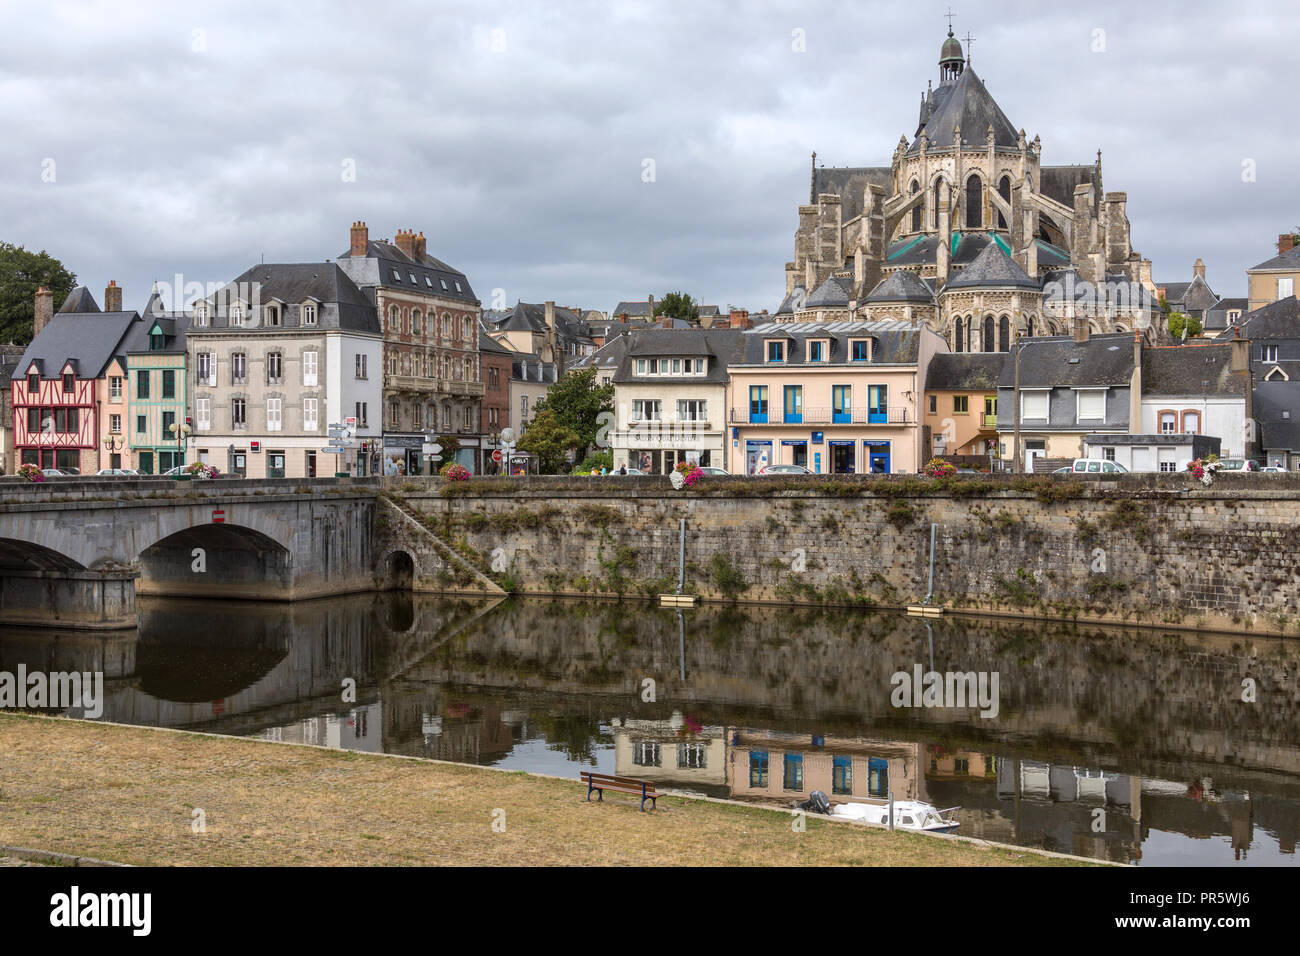 La ville de Mayenne en région Pays de la Loire au nord-ouest de la France. Nommé d'après la Mayenne, qui s'écoule à travers la ville. Banque D'Images